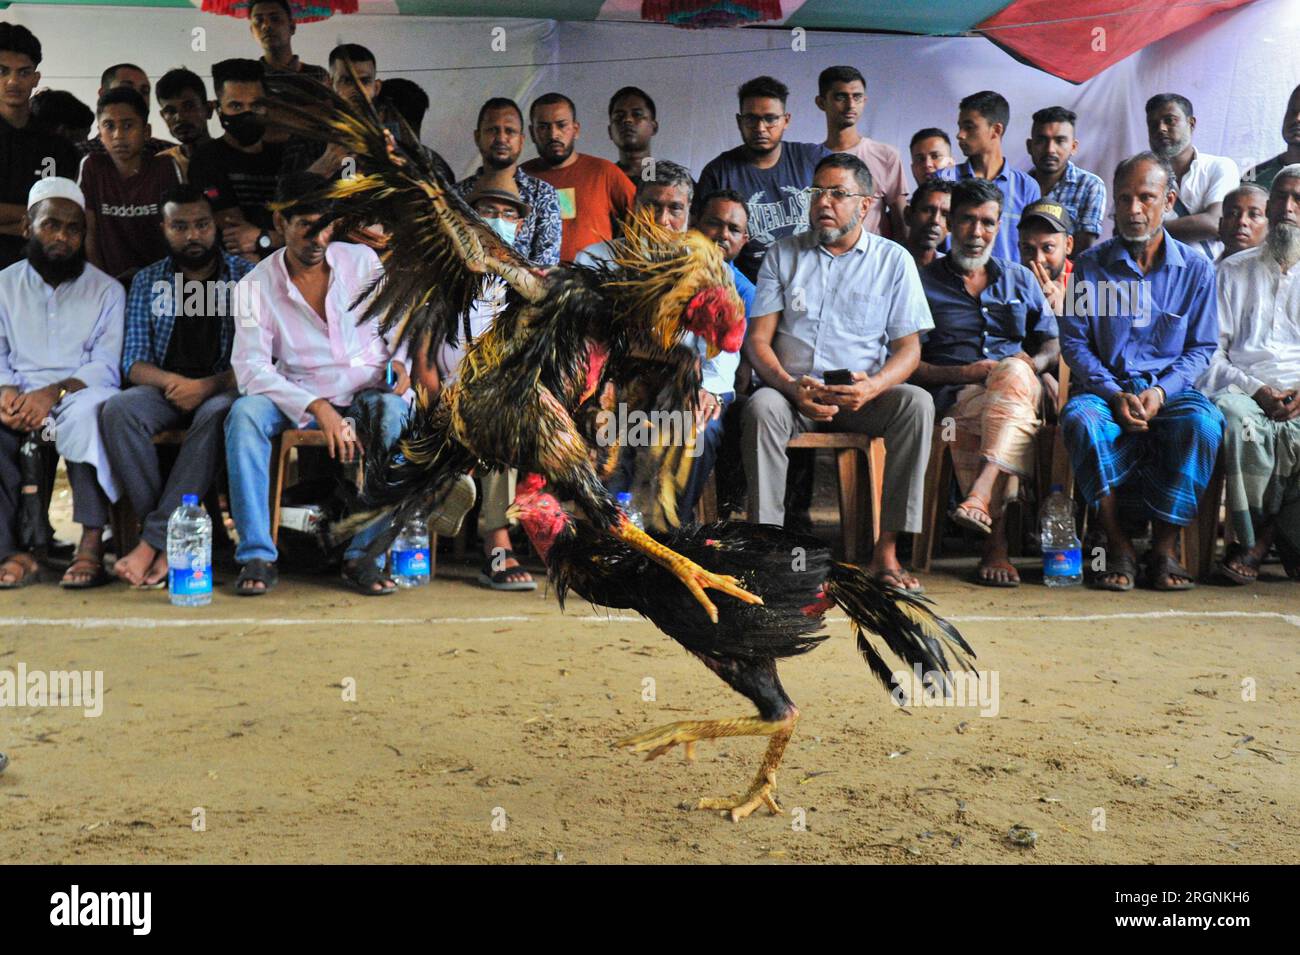 Bei einem Hahnenkampf in Akhalia in Sylhet City kämpfen zwei Hähne. Zuschauer genießen den Schwanzkampf. Die Veranstalter sagten, dies sei ihr Bestreben, die Tradition des ländlichen Bengals zu bewahren. Andererseits gibt es in verschiedenen Gebieten von Sylhet Beschränkungen für die Organisation von Hahnenkämpfen. Sylhet, Bangladesch, Stockfoto